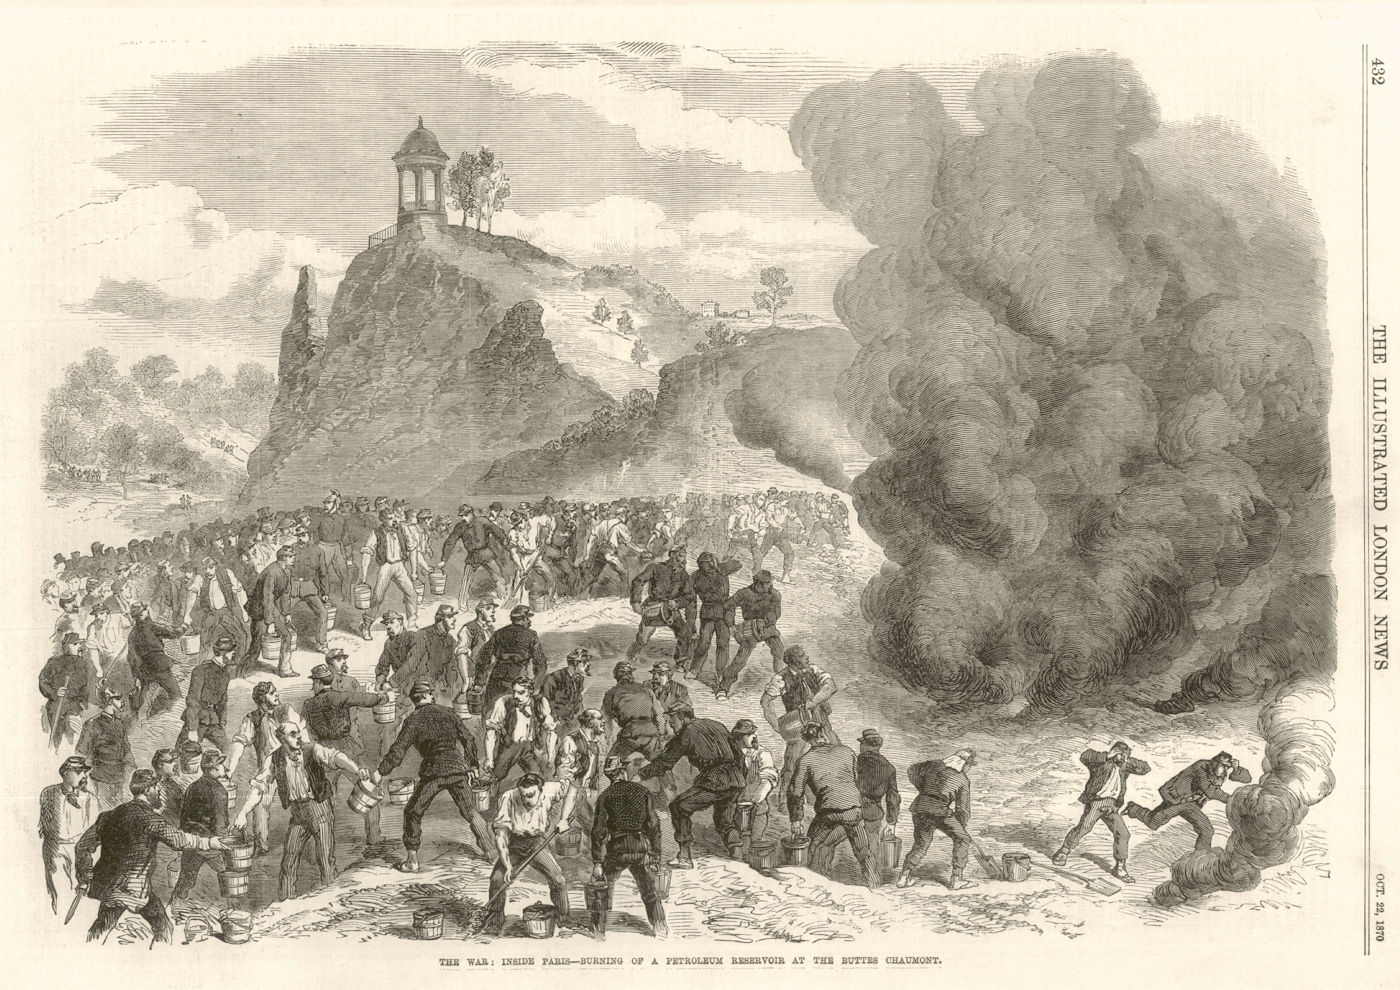 Franco-Prussian War: Paris burning petroleum reservoir Buttes Chaumont 1870